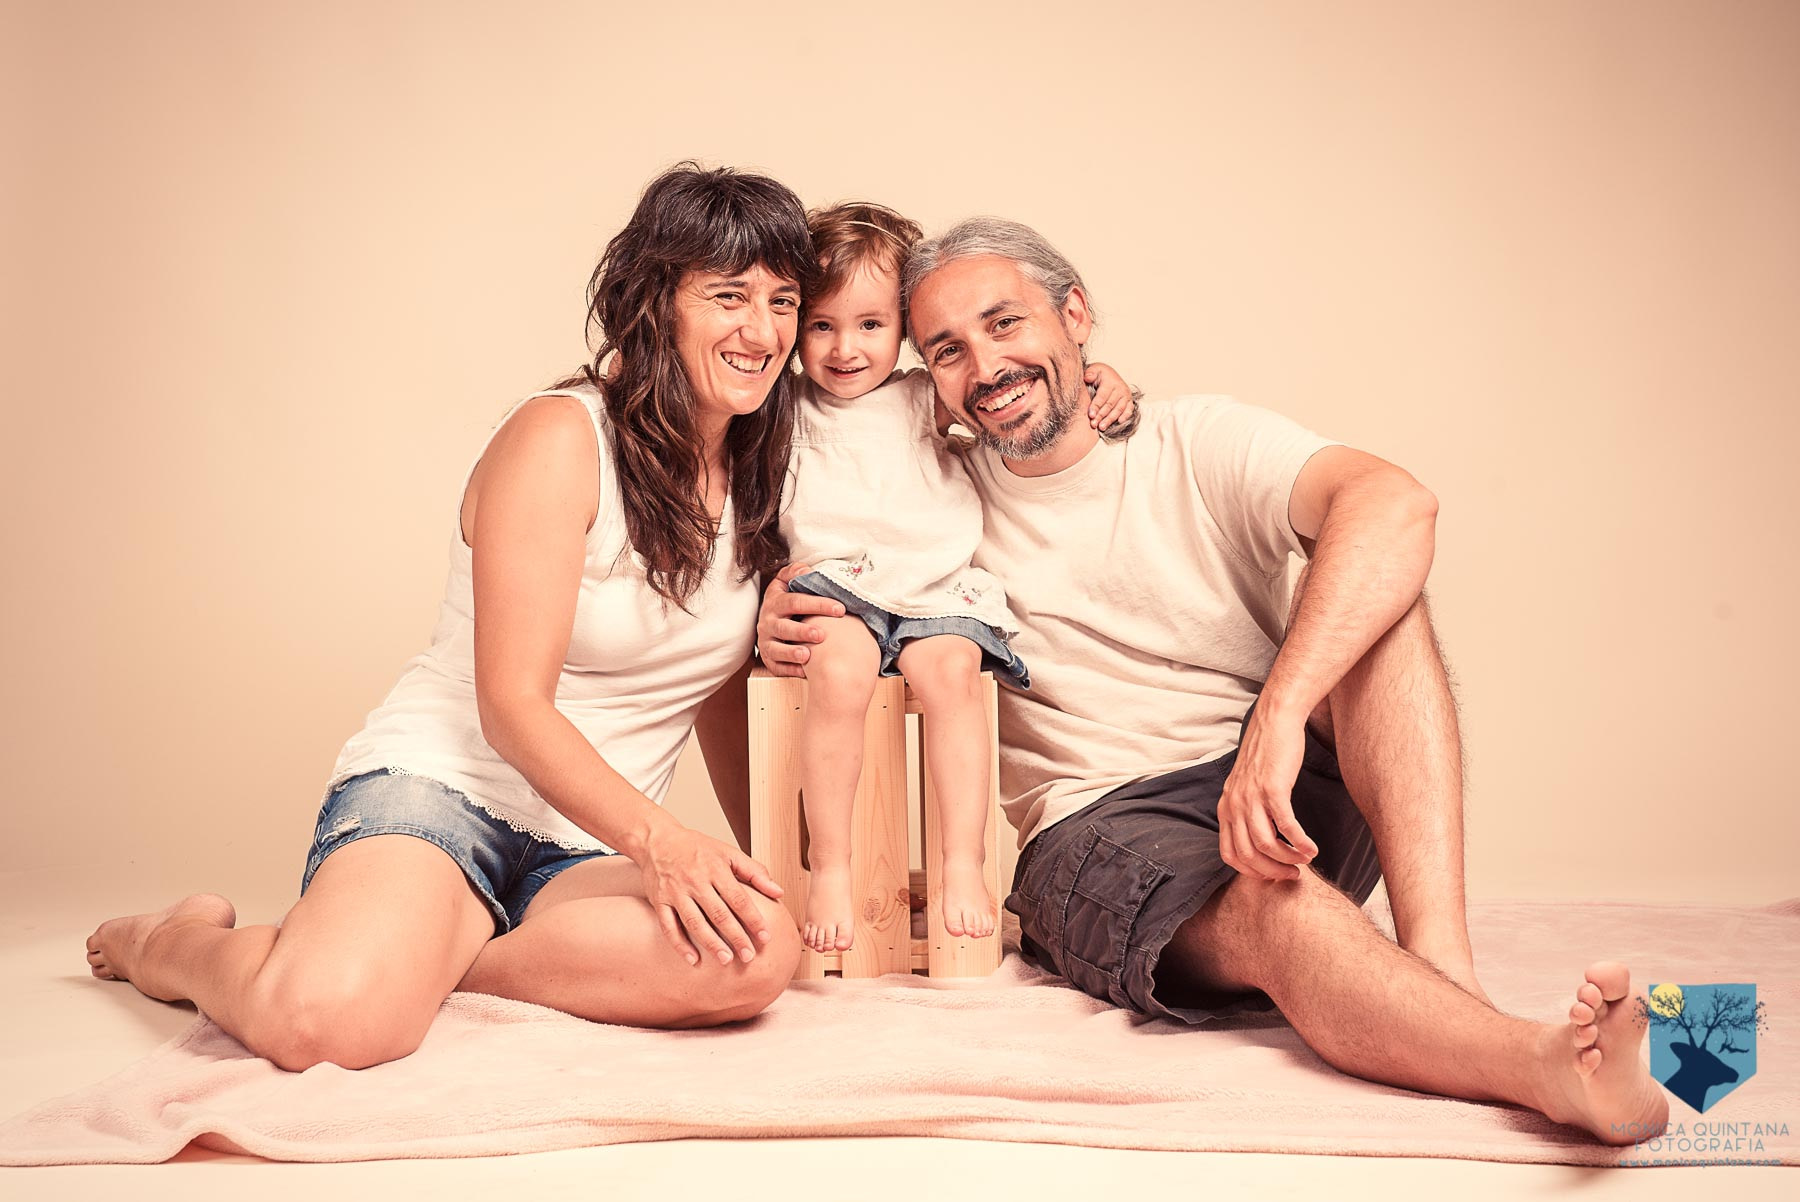 estudio de fotografia de familia con niños pequeños en Figueres, Girona